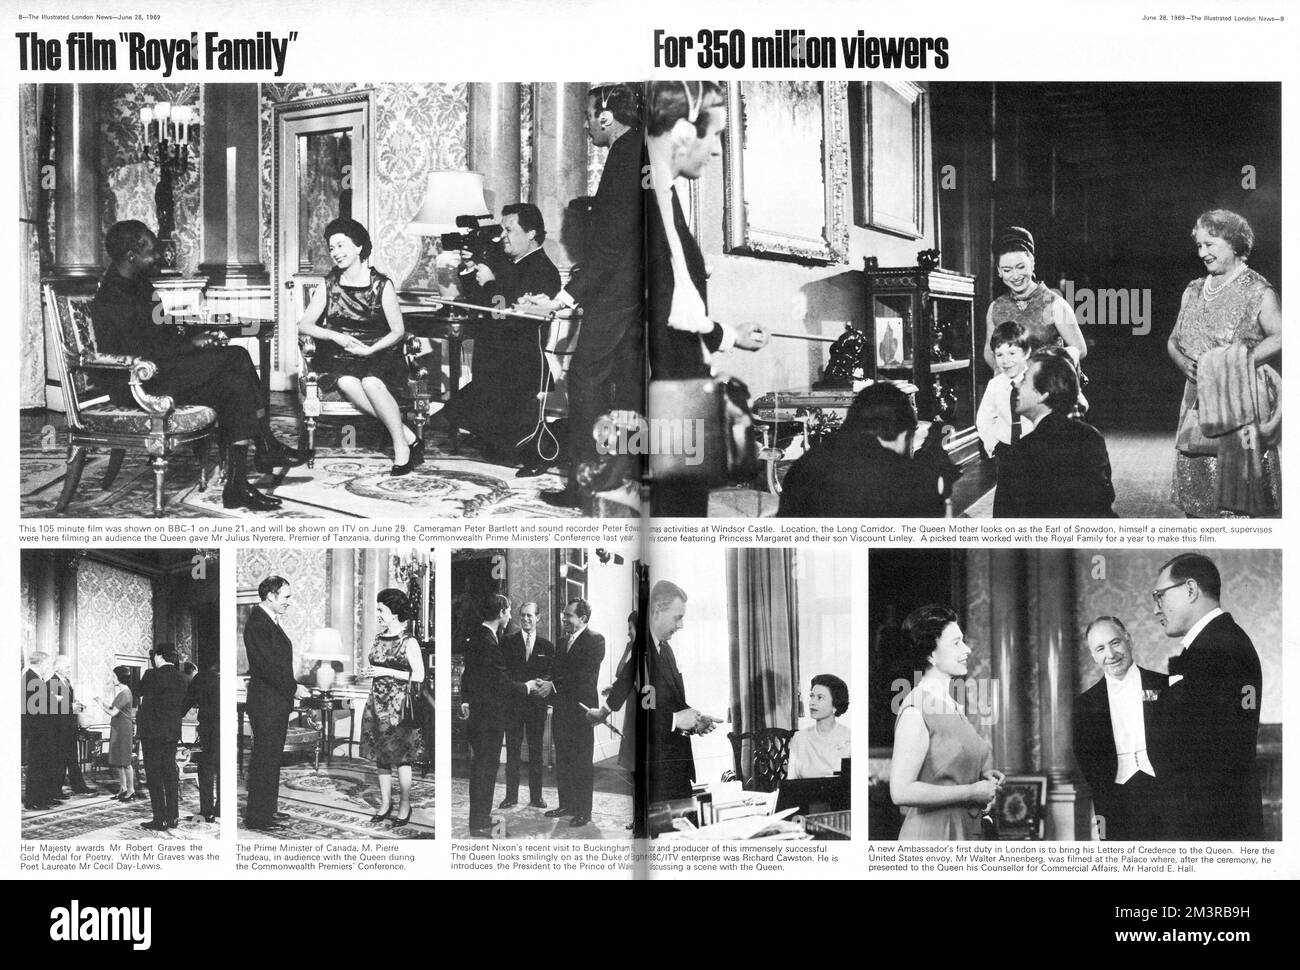 Double page de The Illustrated London News avec des scènes du documentaire 'The Royal Family', un film de 105 minutes diffusé sur BBC1 le 21 juin 1969. Le film était un effort conscient de la part de la famille royale pour présenter une image plus accessible et moderne au public. Date: 1969 Banque D'Images